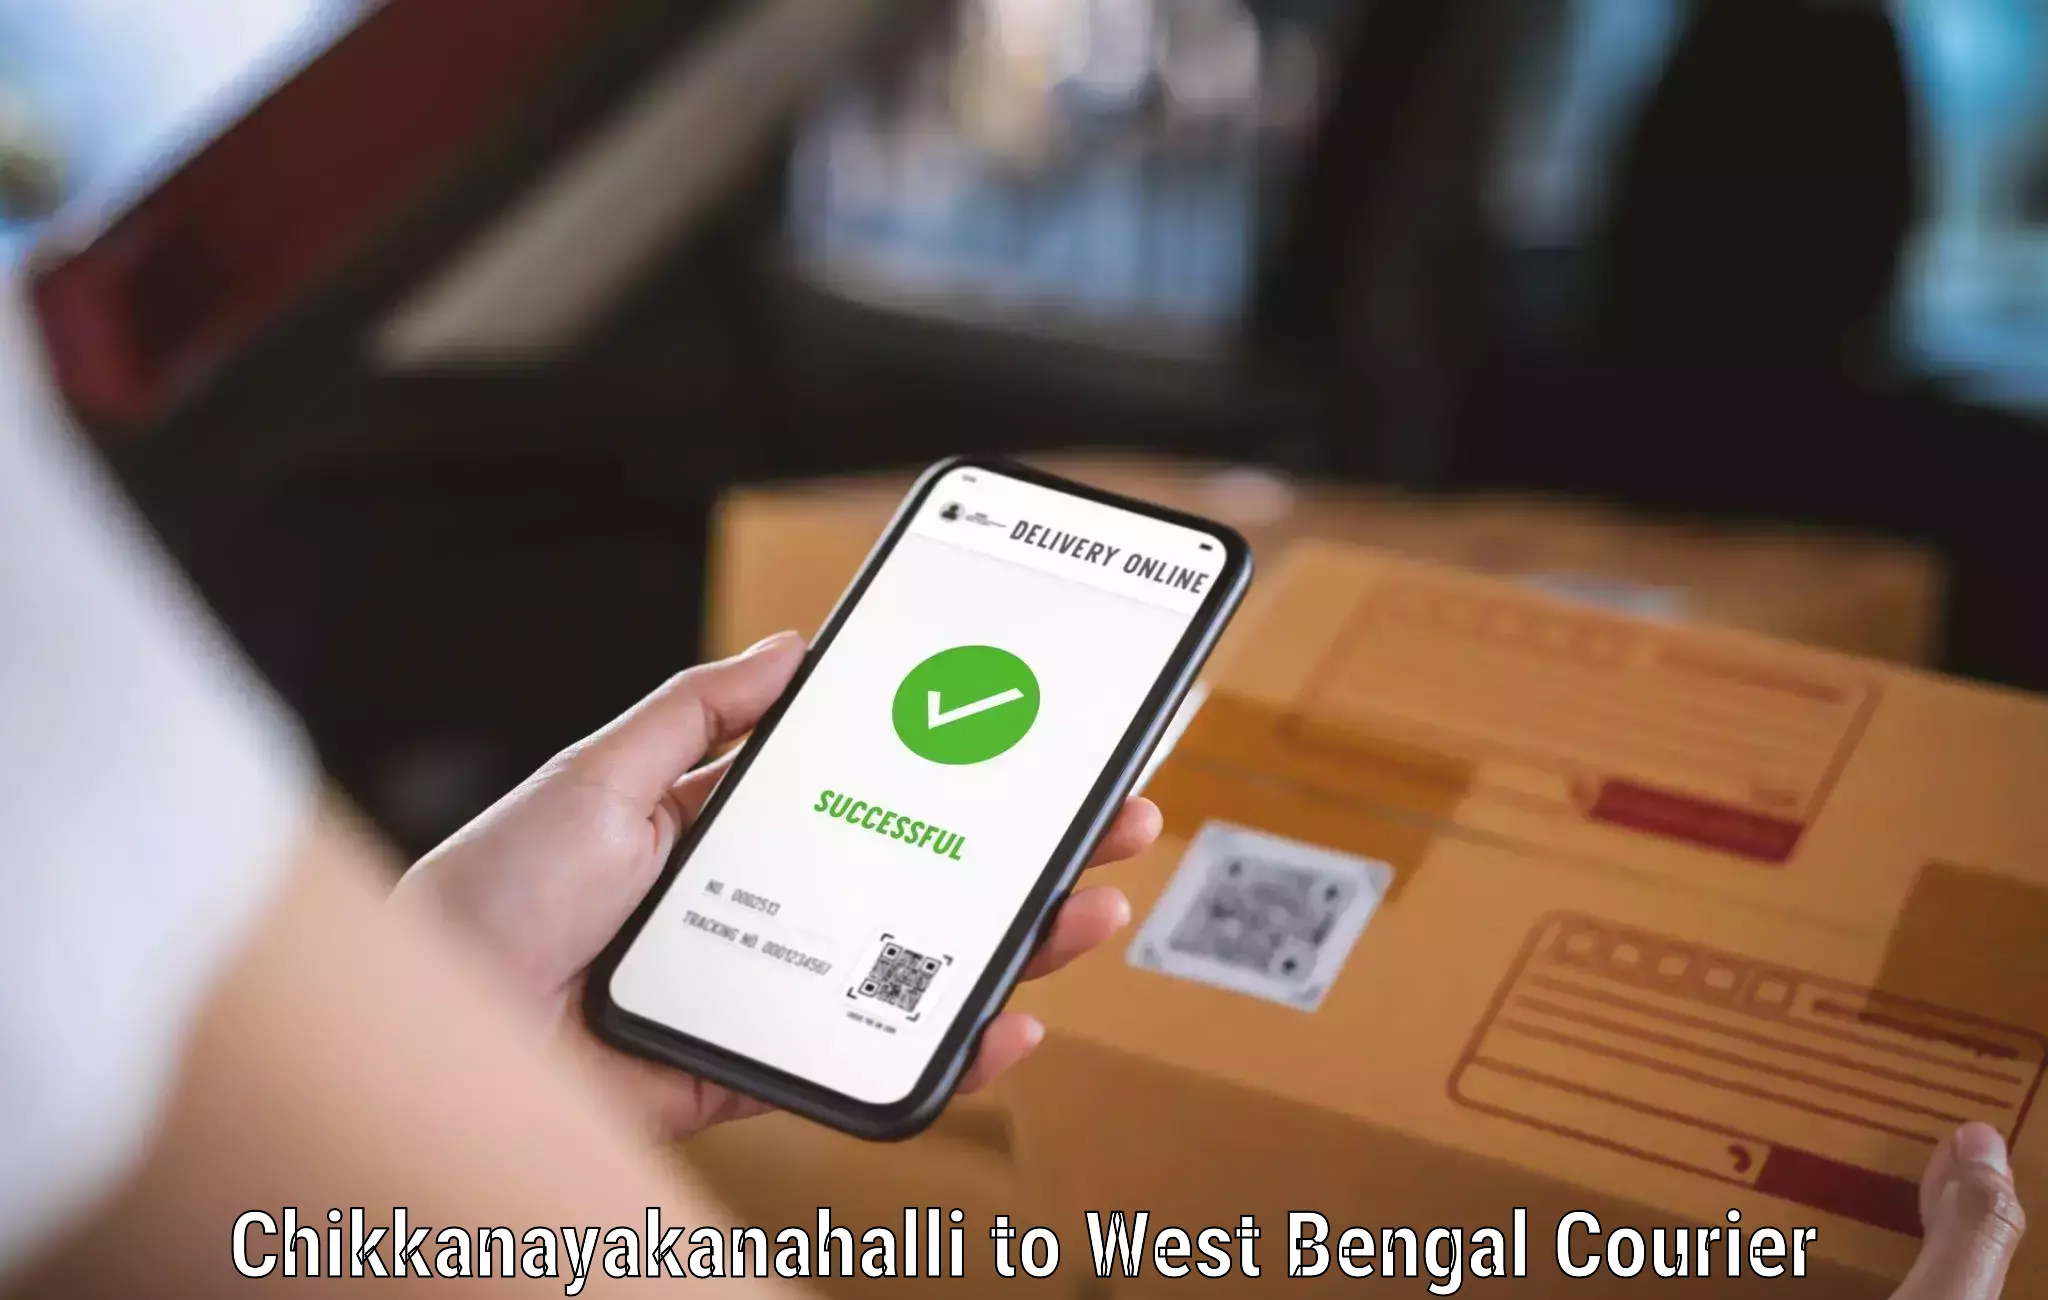 Customer-friendly courier services Chikkanayakanahalli to Bhagabati